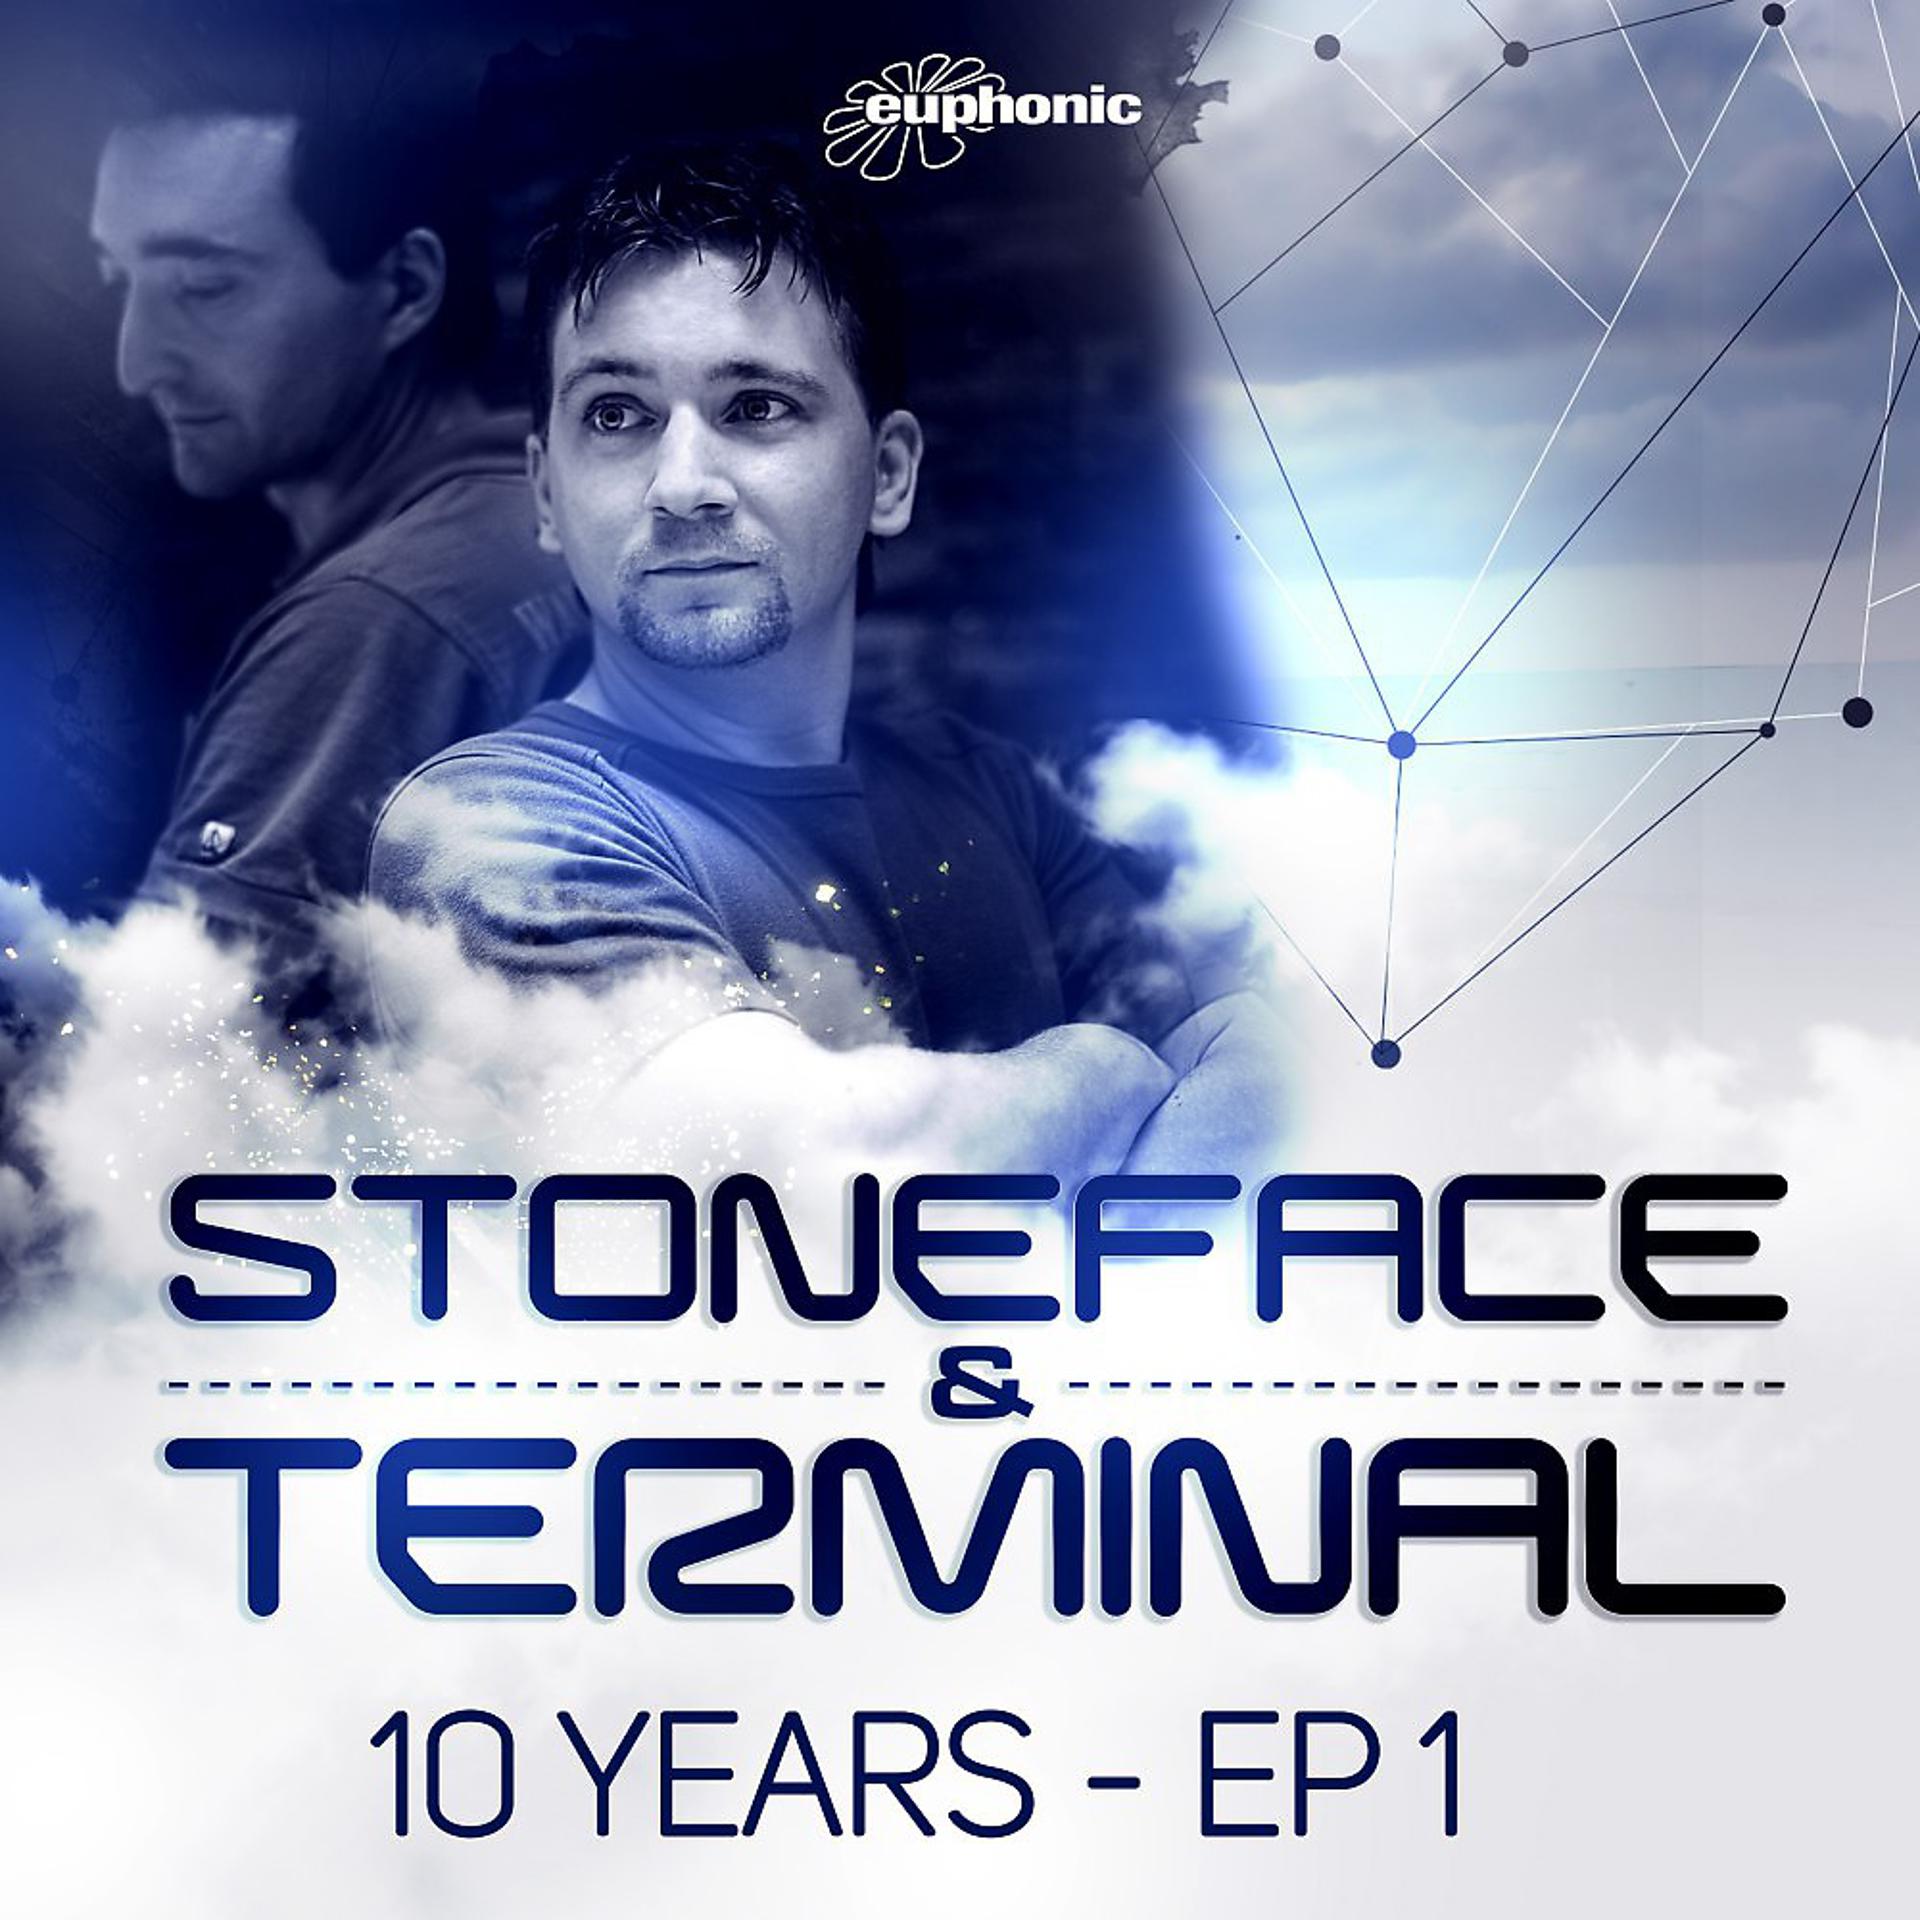 Stoneface terminal. Stoneface & Terminal - Venus. Stoneface & Terminal – Summerscape. Stoneface Terminal wonderful.